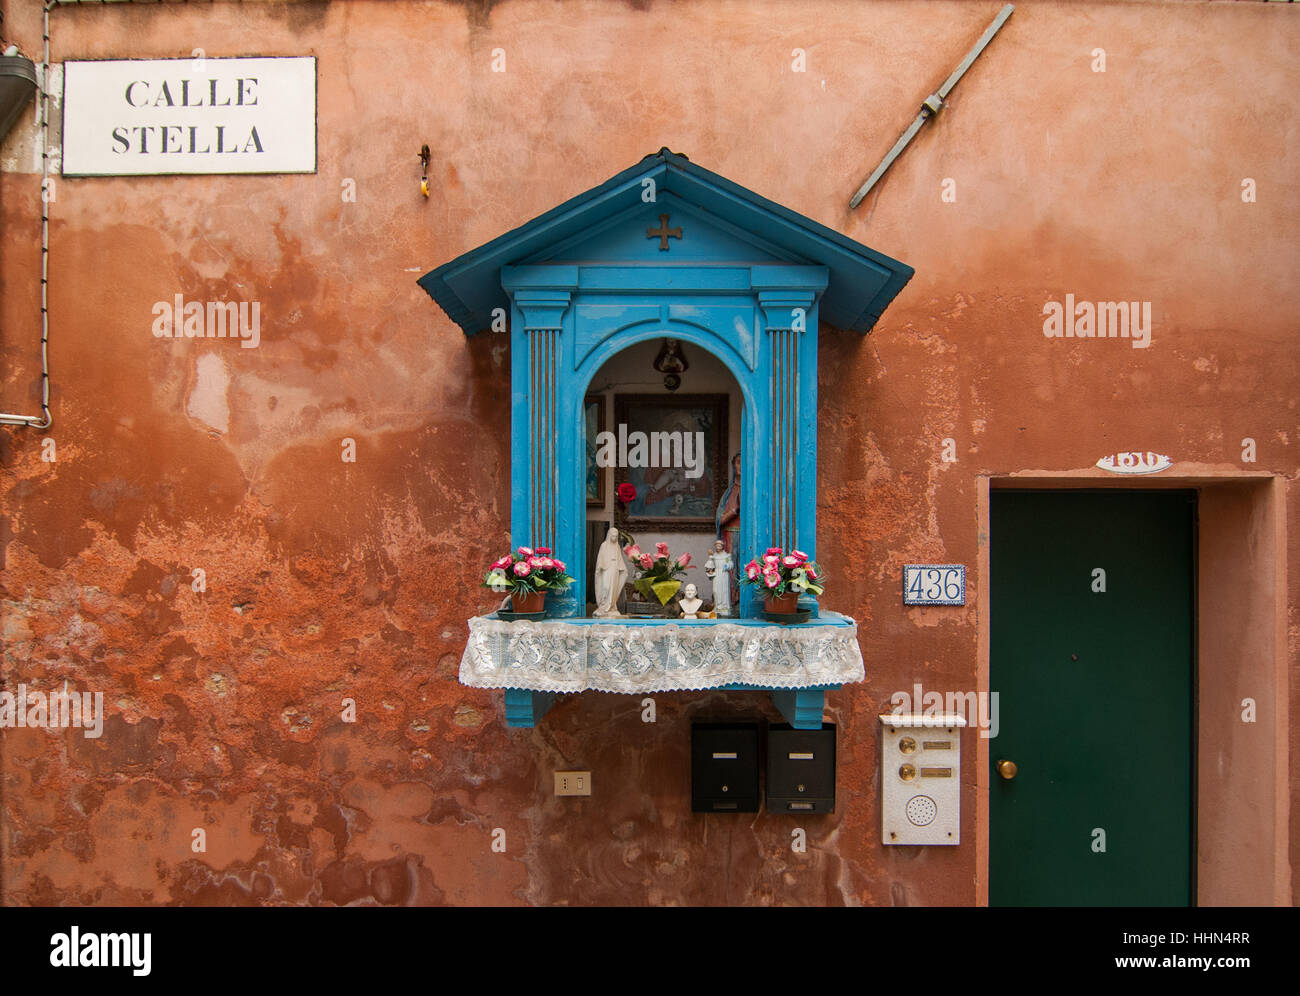 Ein Votiv Schrein in Venedig. Die Votiv Schreine in Venedig zum ersten Mal in der Geschichte wurden als Straßenlaterne an entscheidenden Stellen der Straßen verwendet. Stockfoto